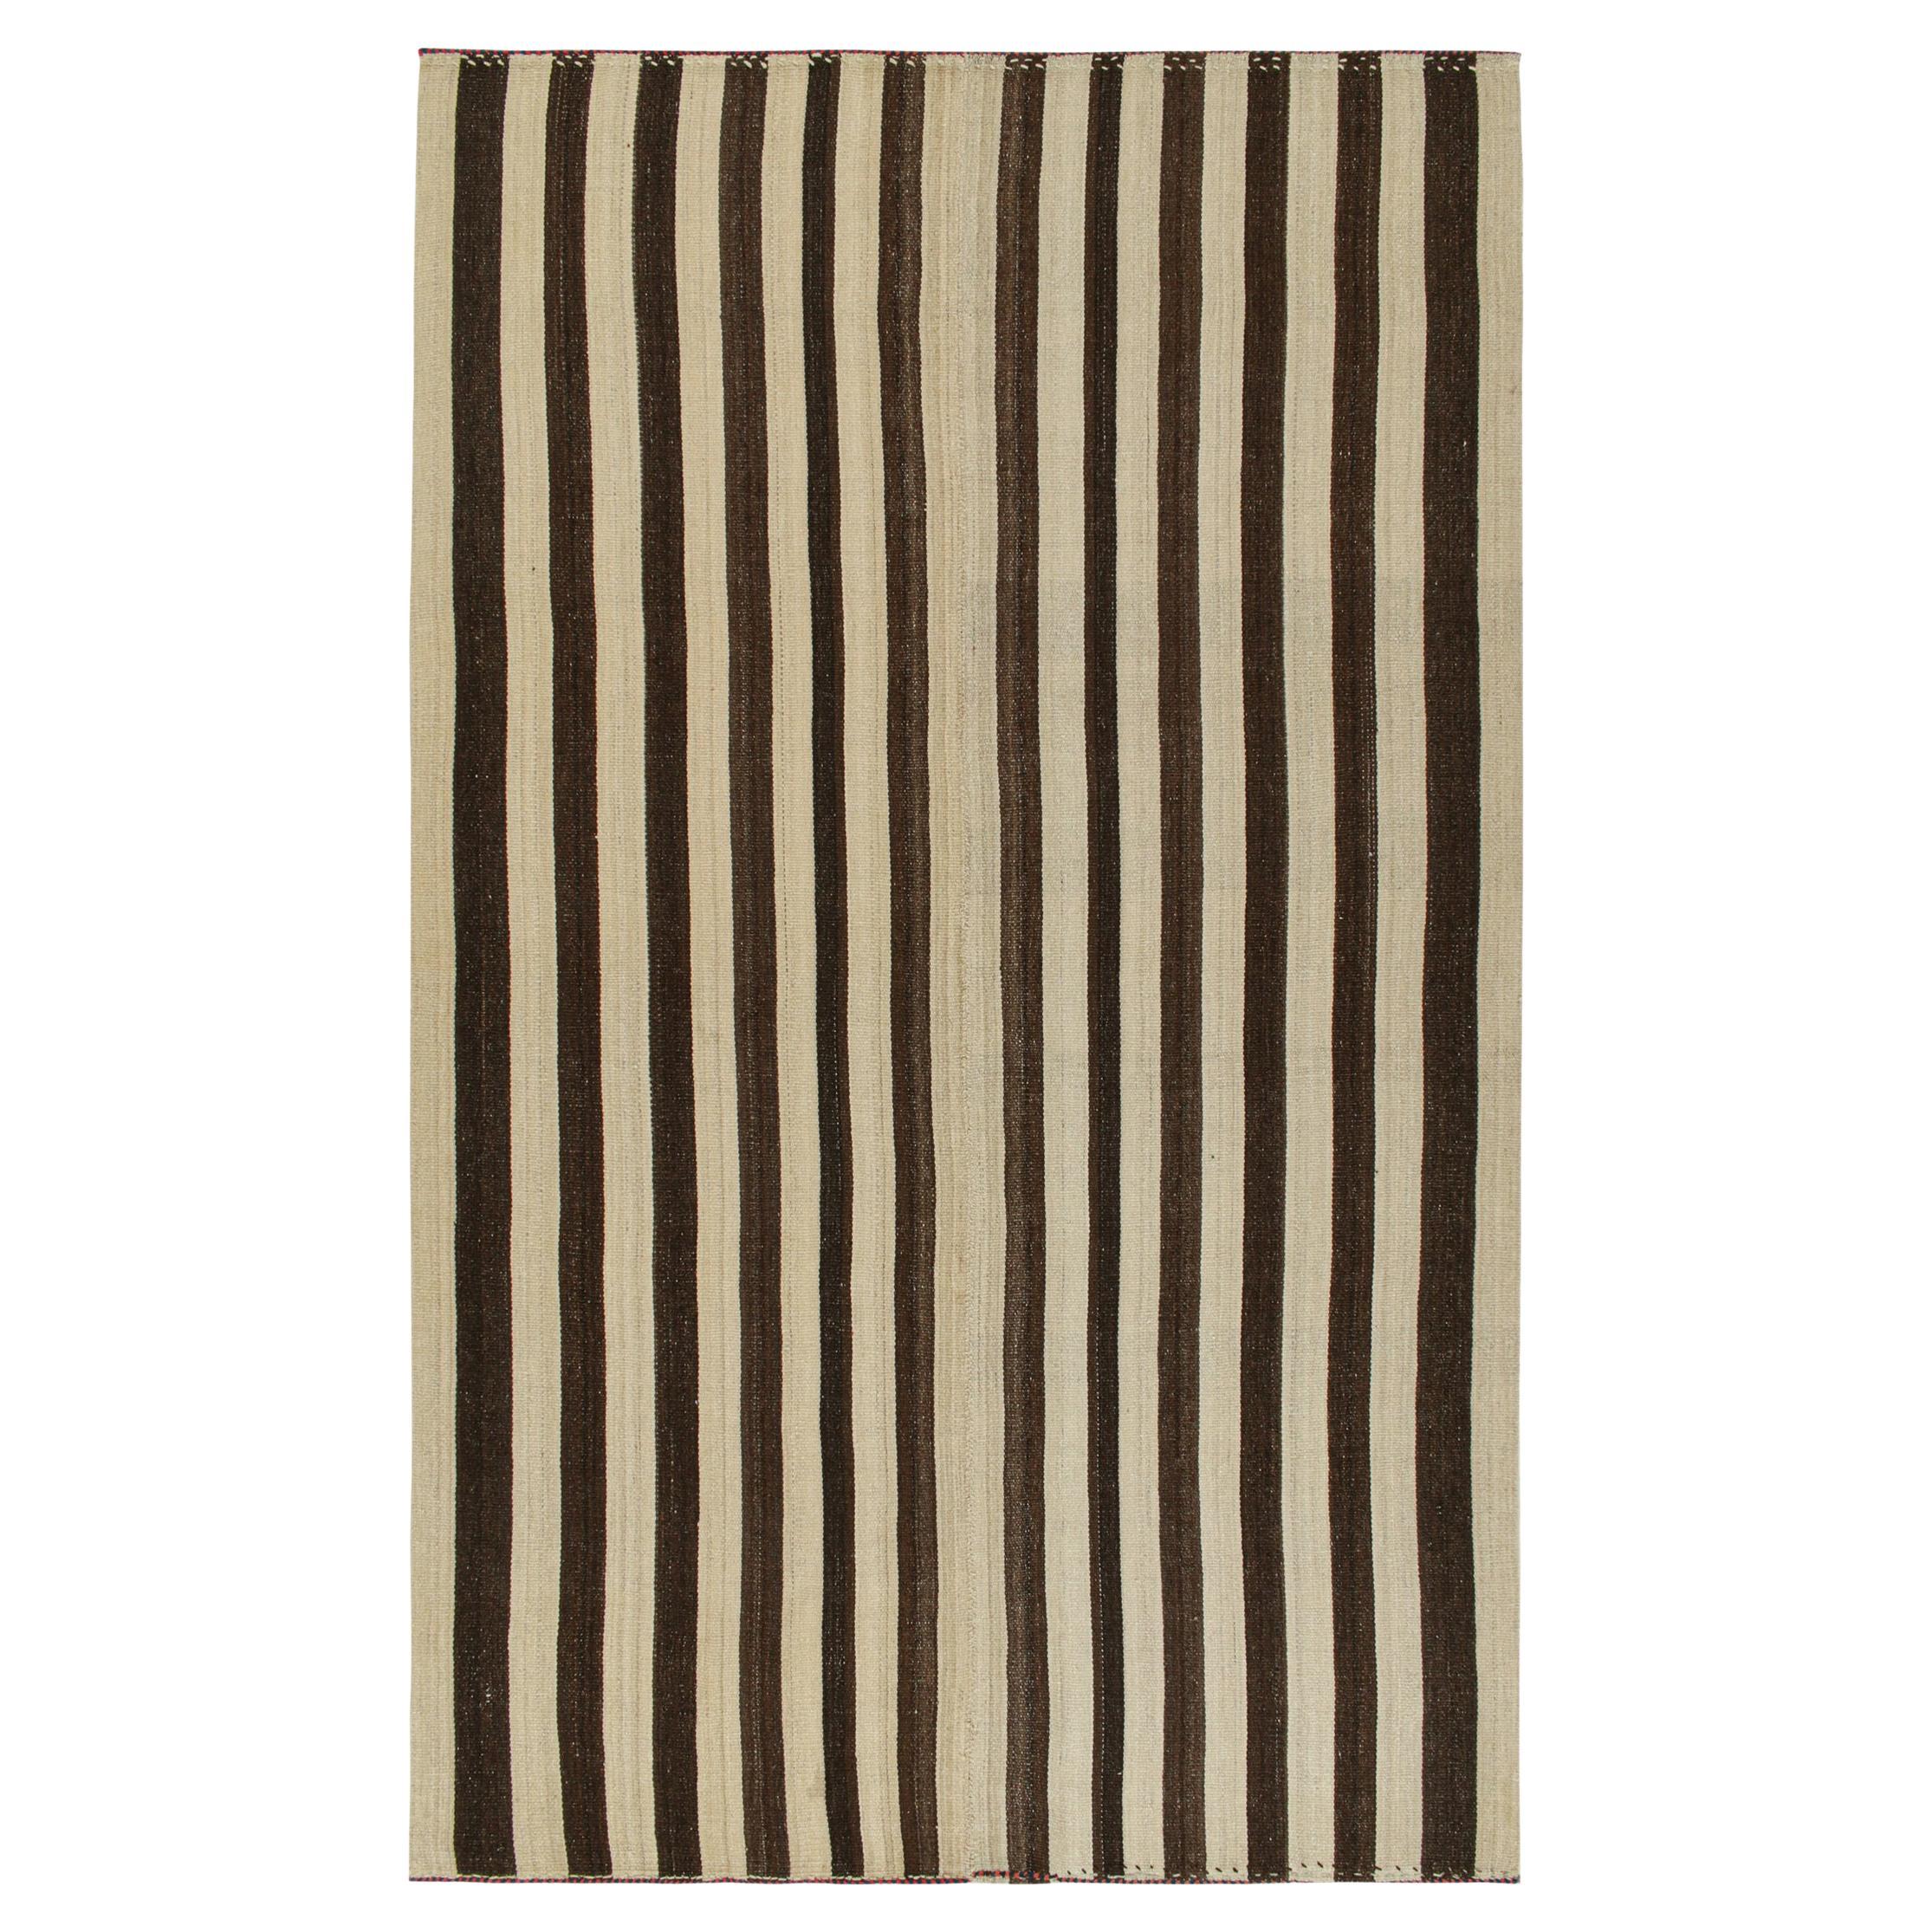 Vintage Bakhtiari Persian Kilim rug in Beige and Brown Stripes by Rug & Kilim